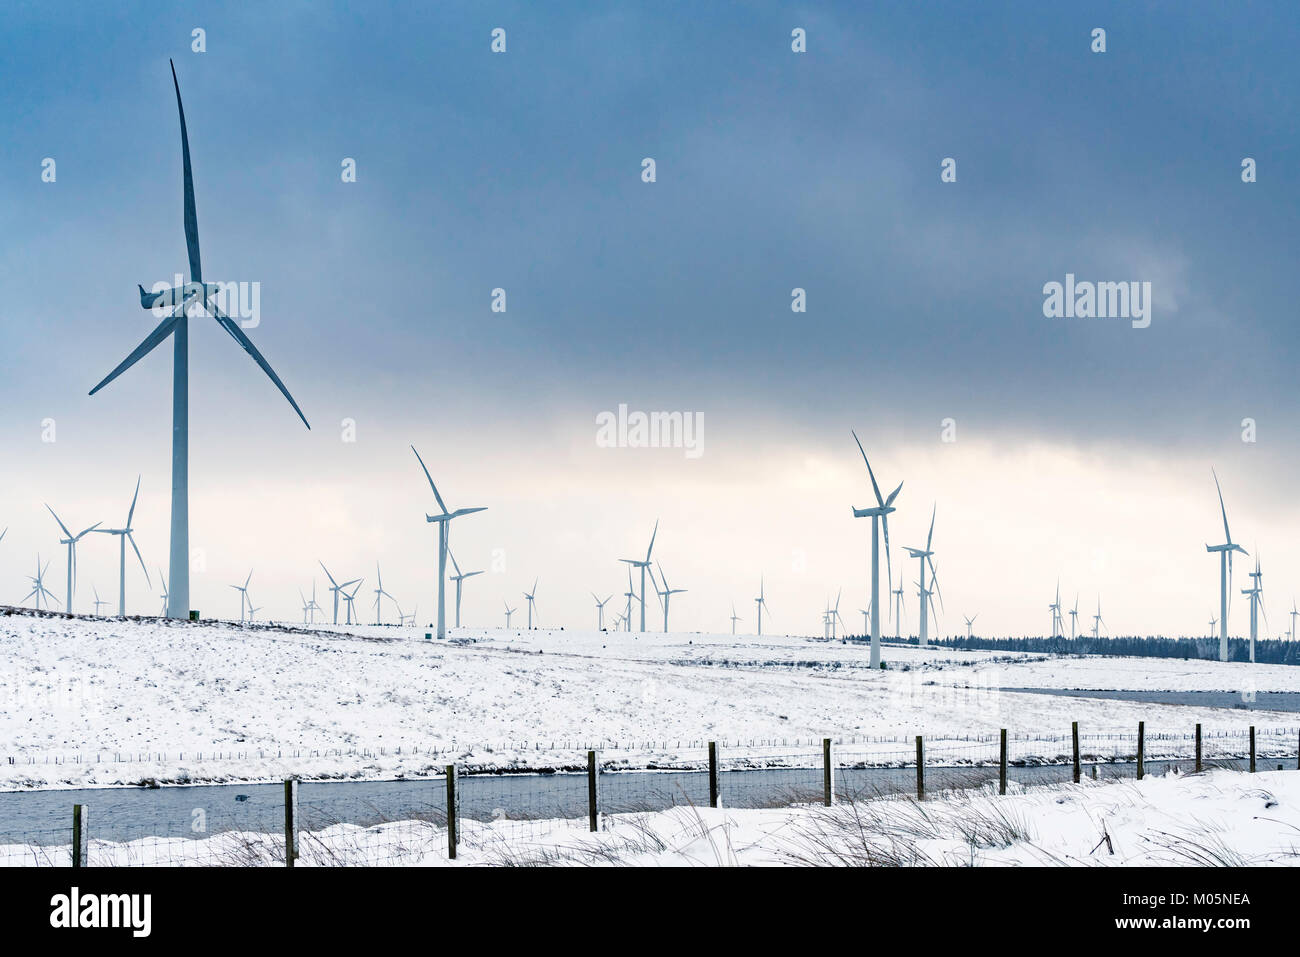 Voir des éoliennes à Whitelee Windfarm après chute de neige en hiver exploité par Scottish Power, Ecosse, Royaume-Uni Banque D'Images